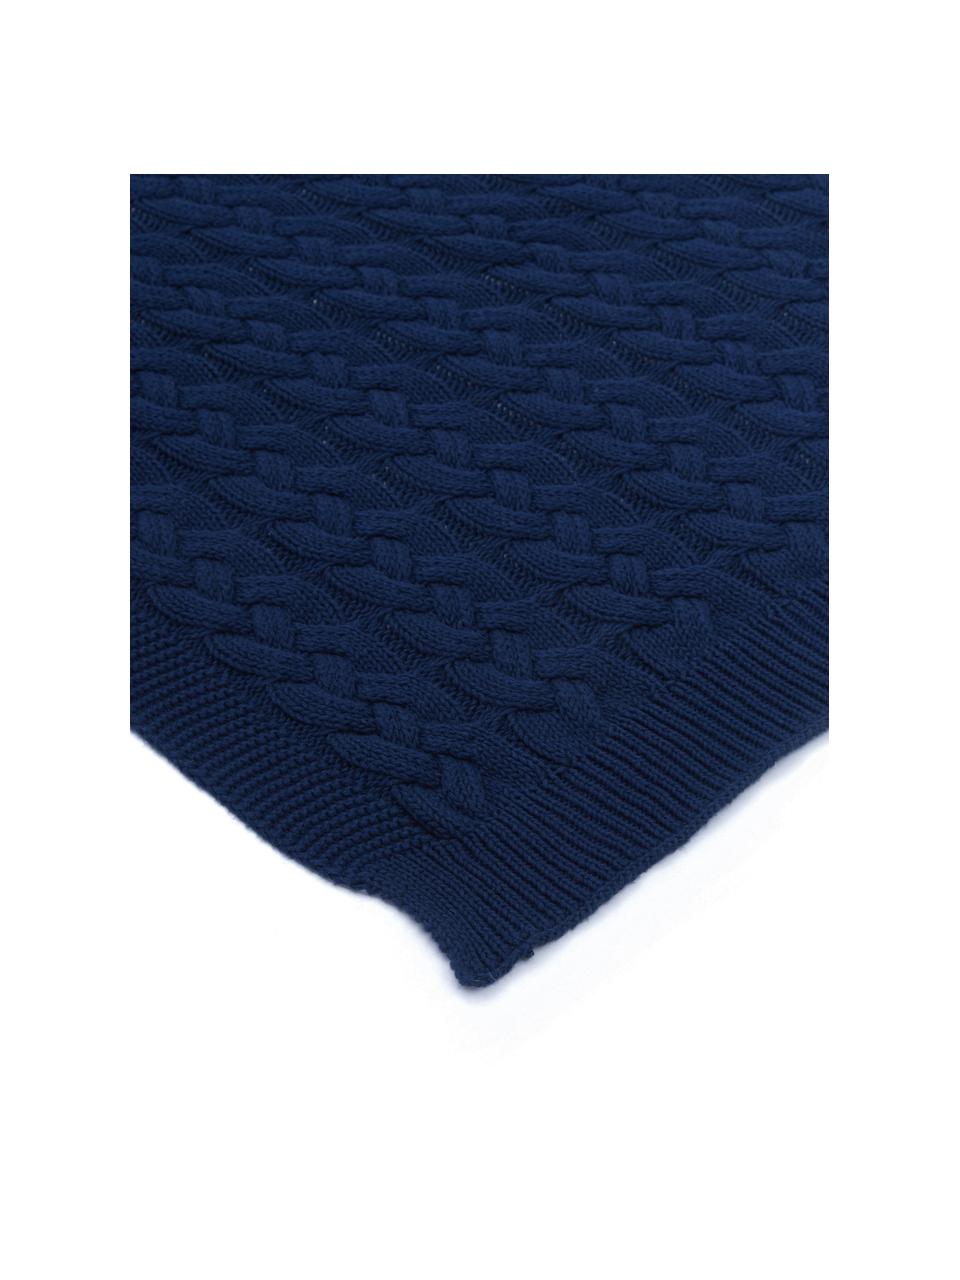 Gebreide plaid Caleb met kabelpatroon, 100% katoen, Blauw, 130 x 170 cm